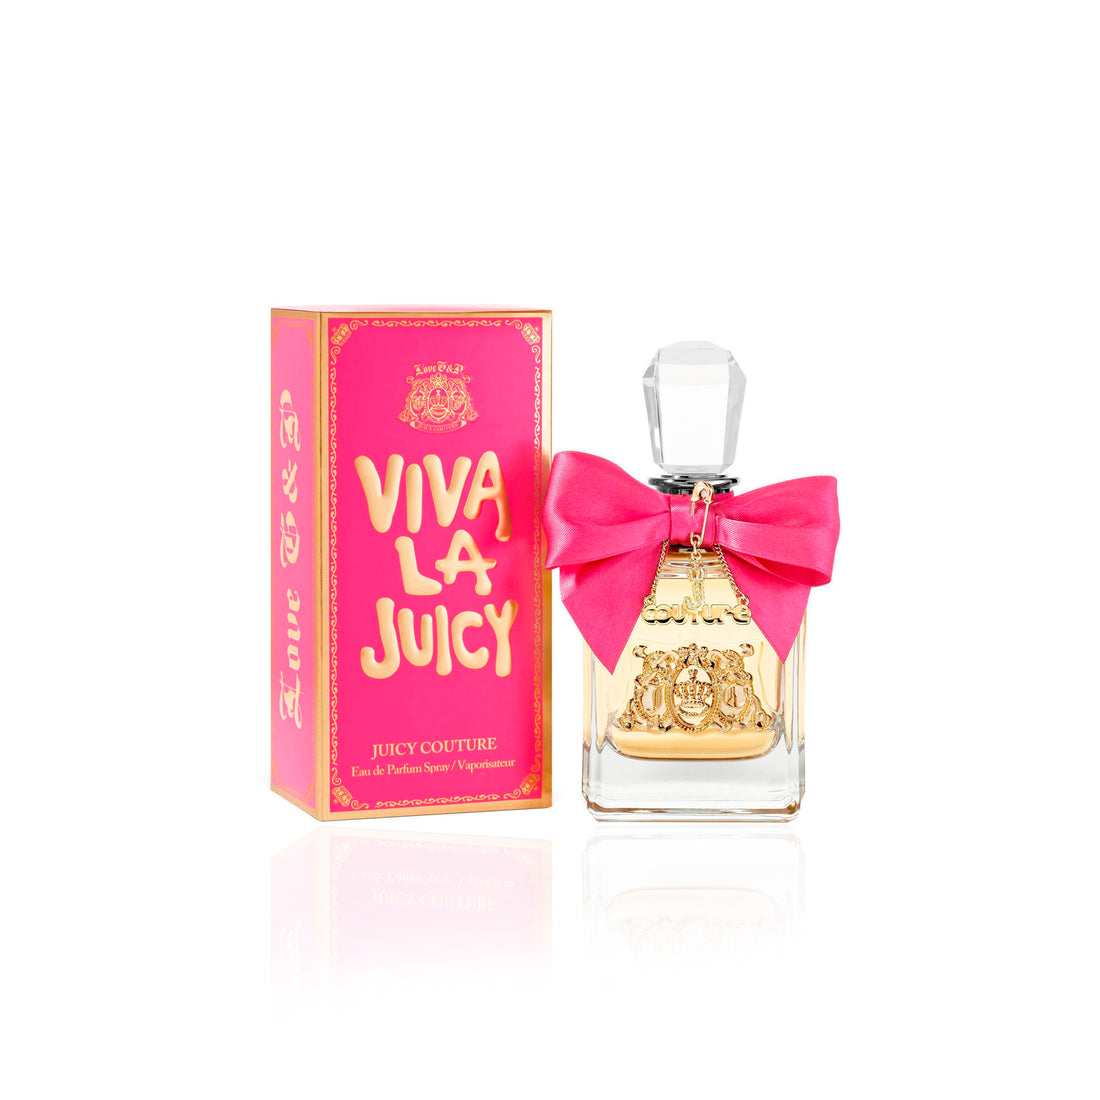 Juicy Couture Viva La Juicy Eau De Parfum Vaporisateur 50 Ml